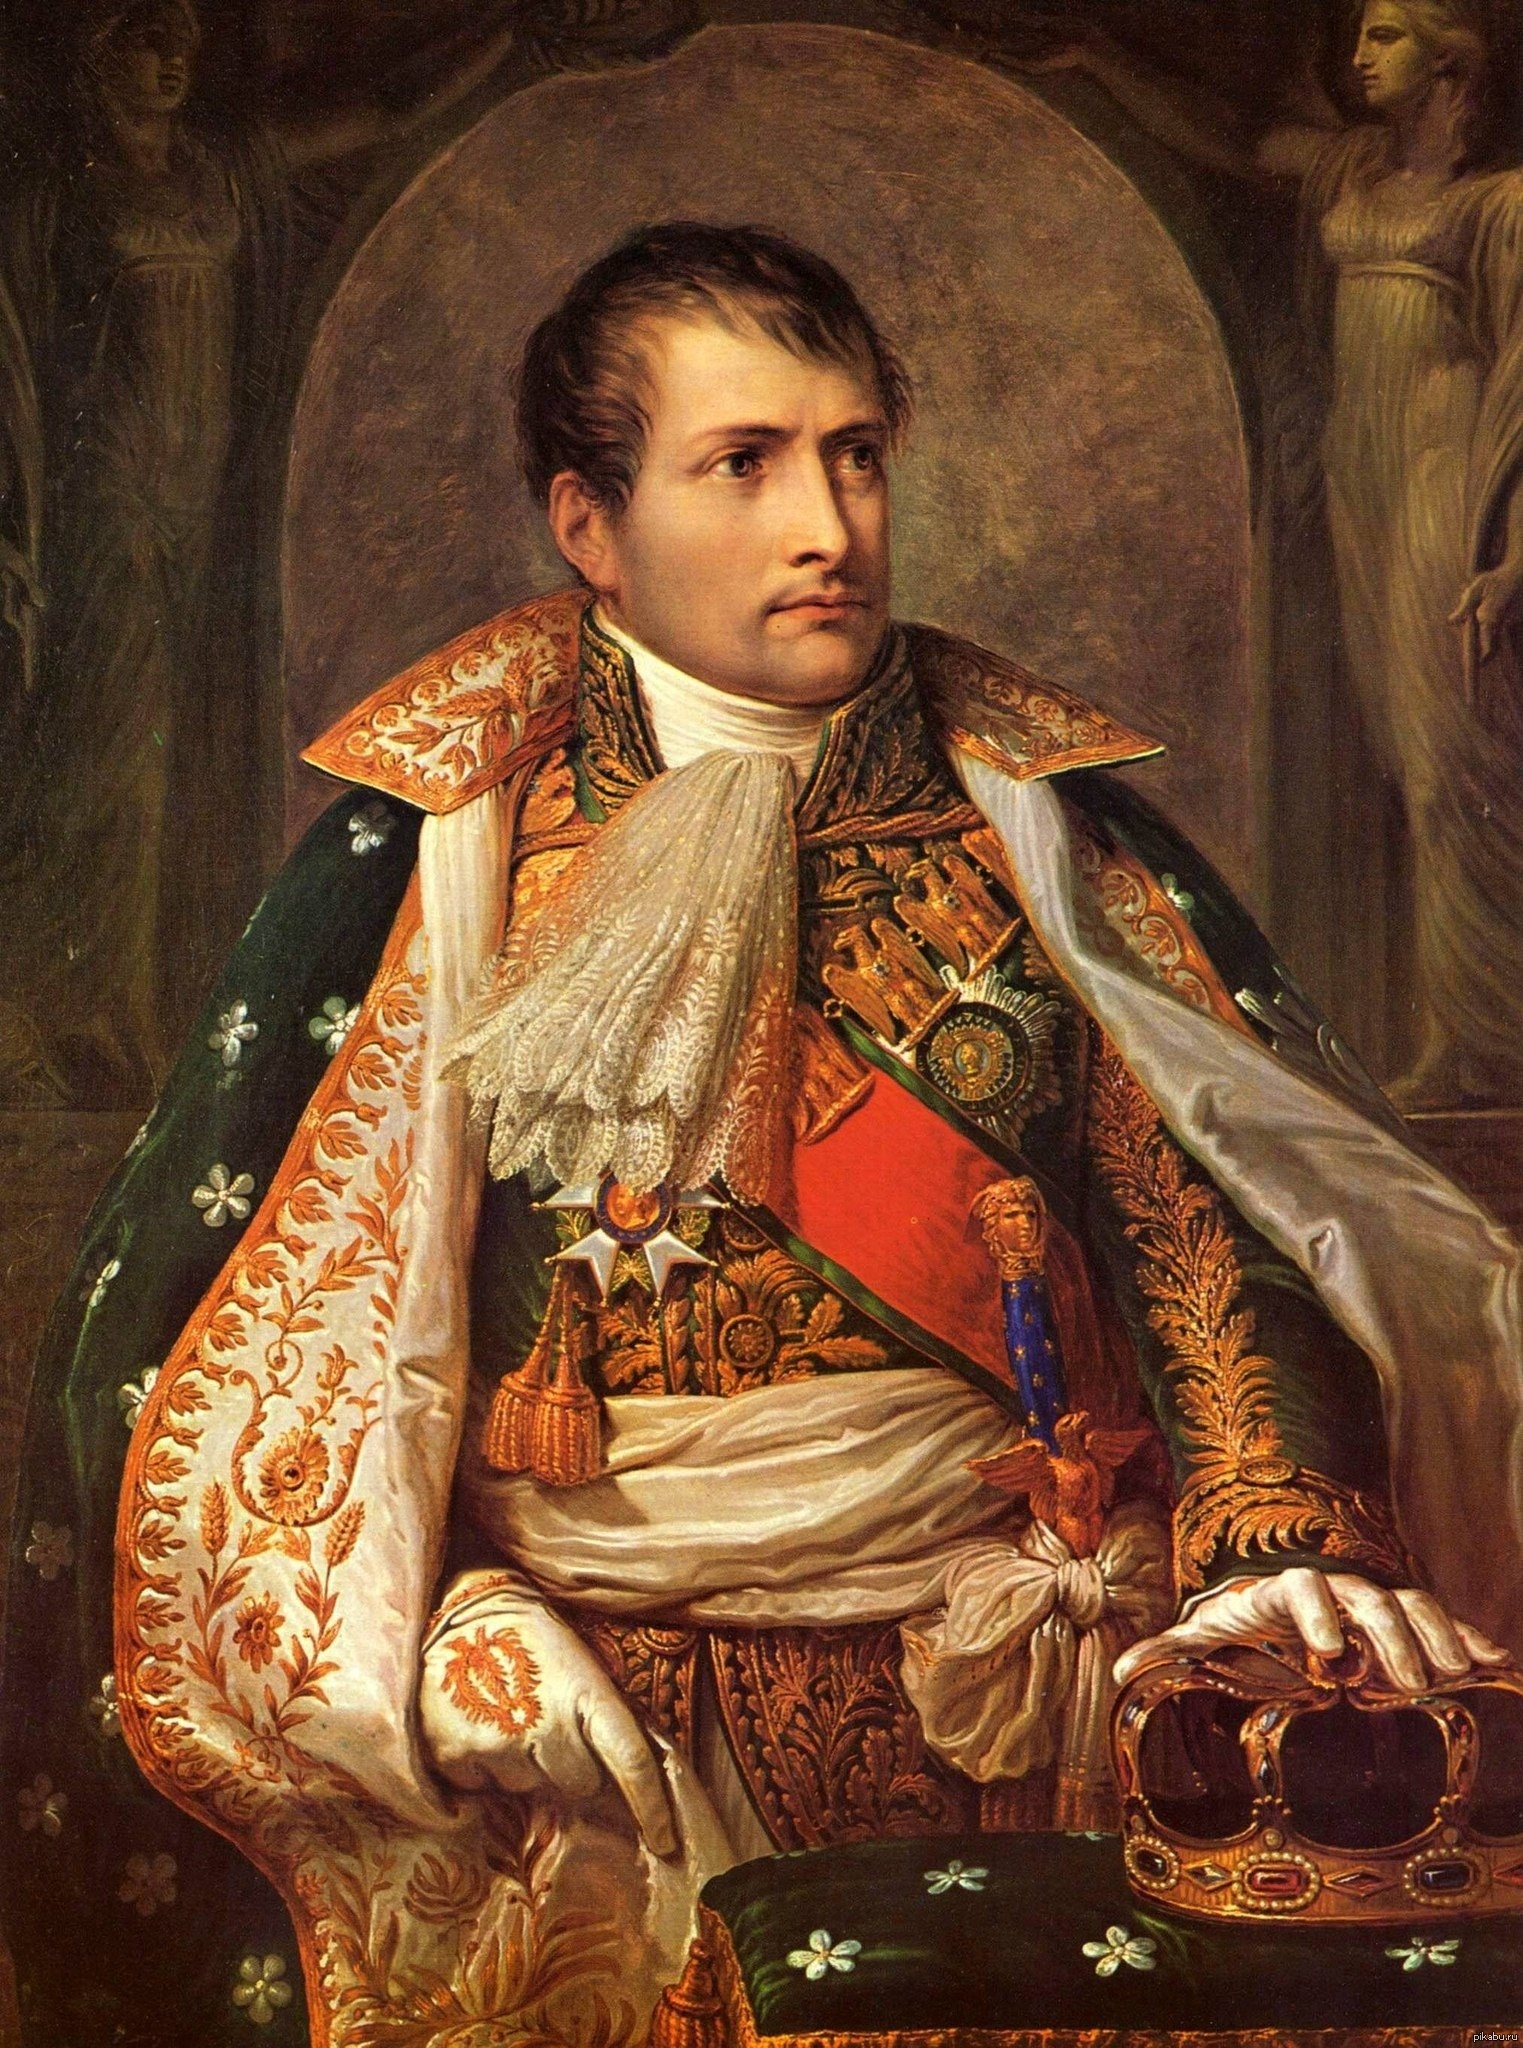 Исторический портрет. Наполеон Бонапарт. Андреа Аппиани портрет Наполеона. Наполеон Бонапарт Император Франции. Андреа Аппиани. Наполеон коронован королём Италии. 1805.